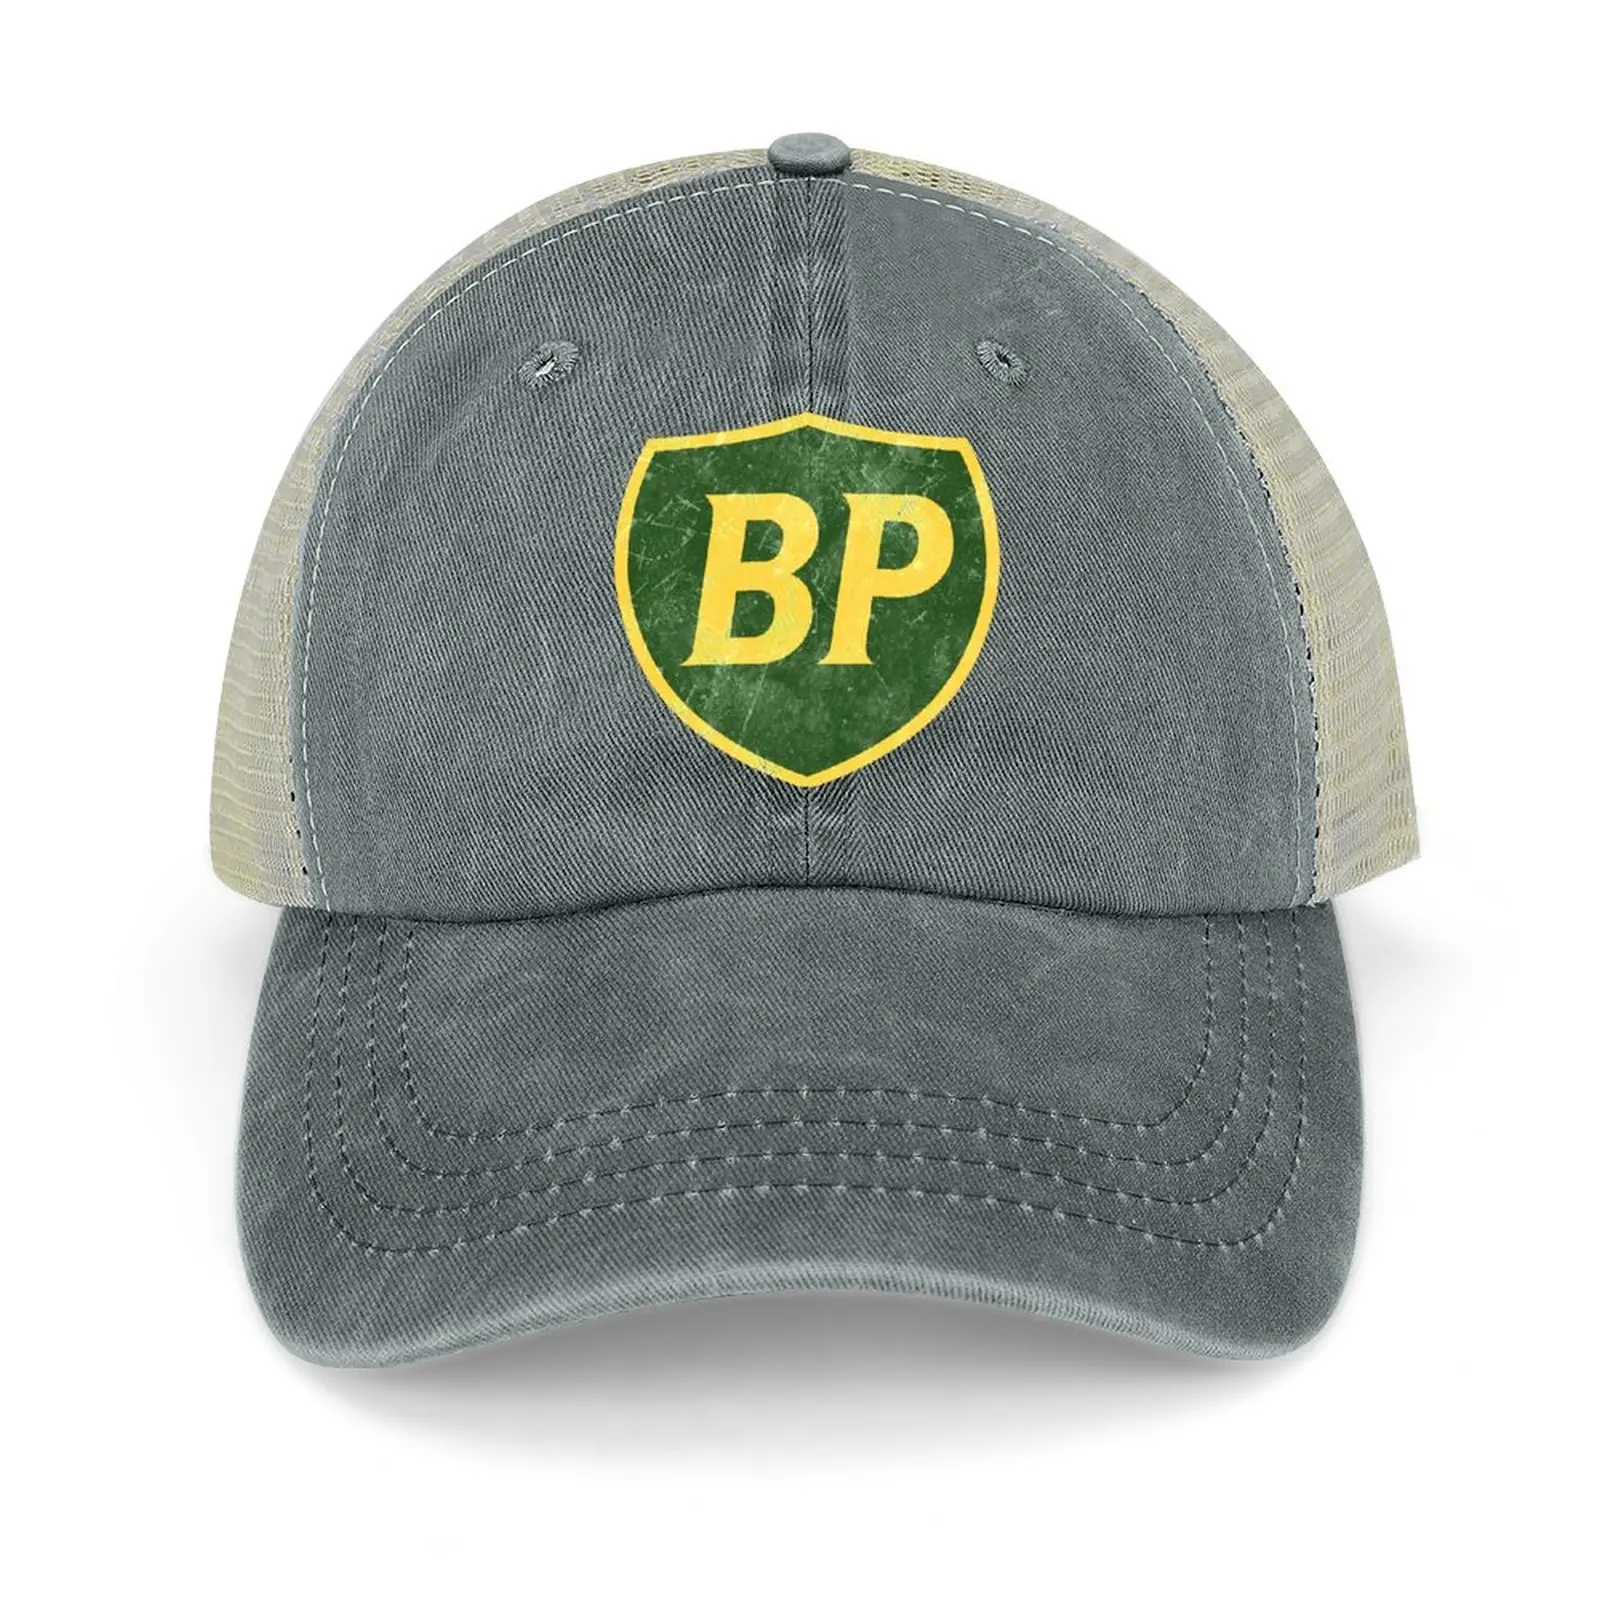 BP Autópálya Állomás British Petroleum Vintage Cowboy Kalap Sapka tea kalapok Sport Sapkák Kalapok Női Férfi